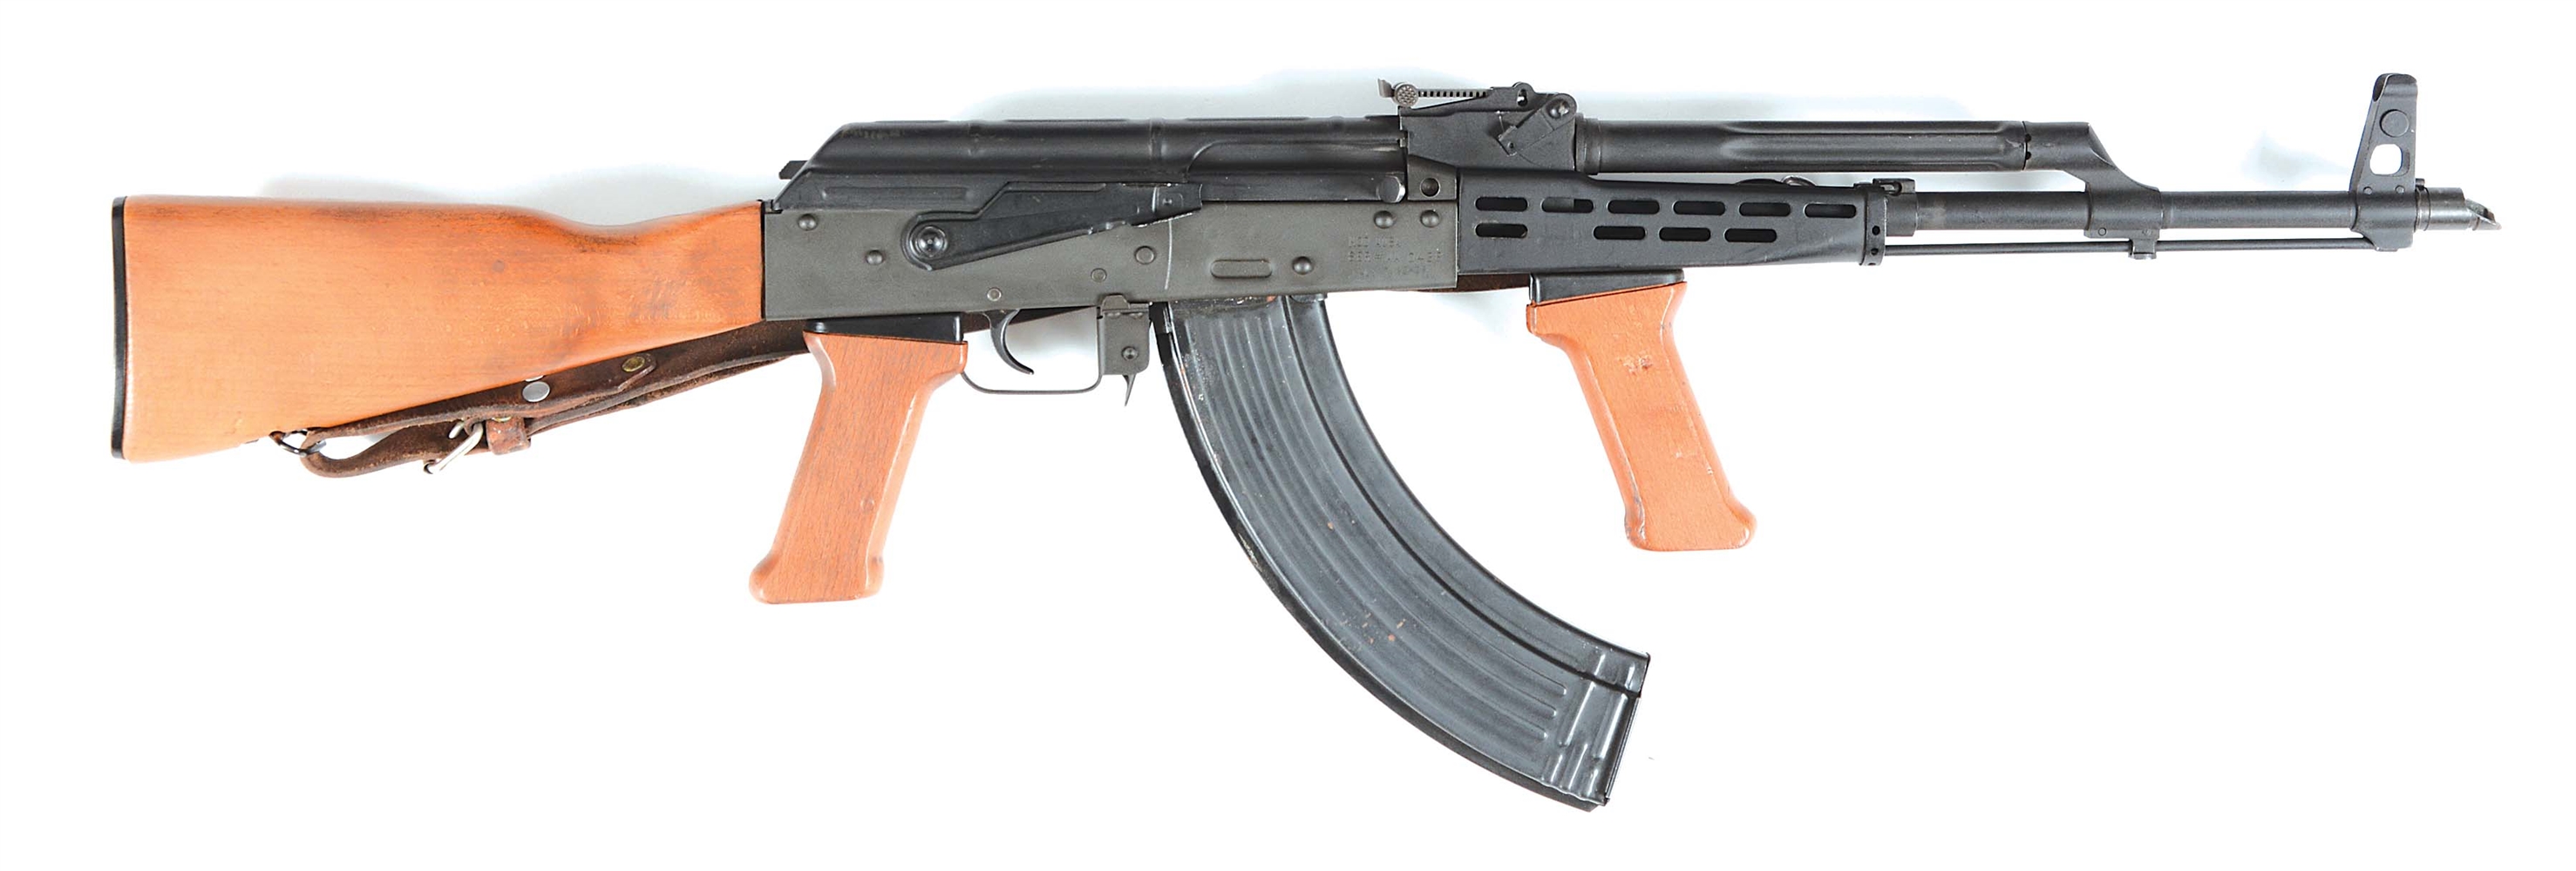 (M) ARMORY USA AK-47 SEMI-AUTOMATIC RIFLE.